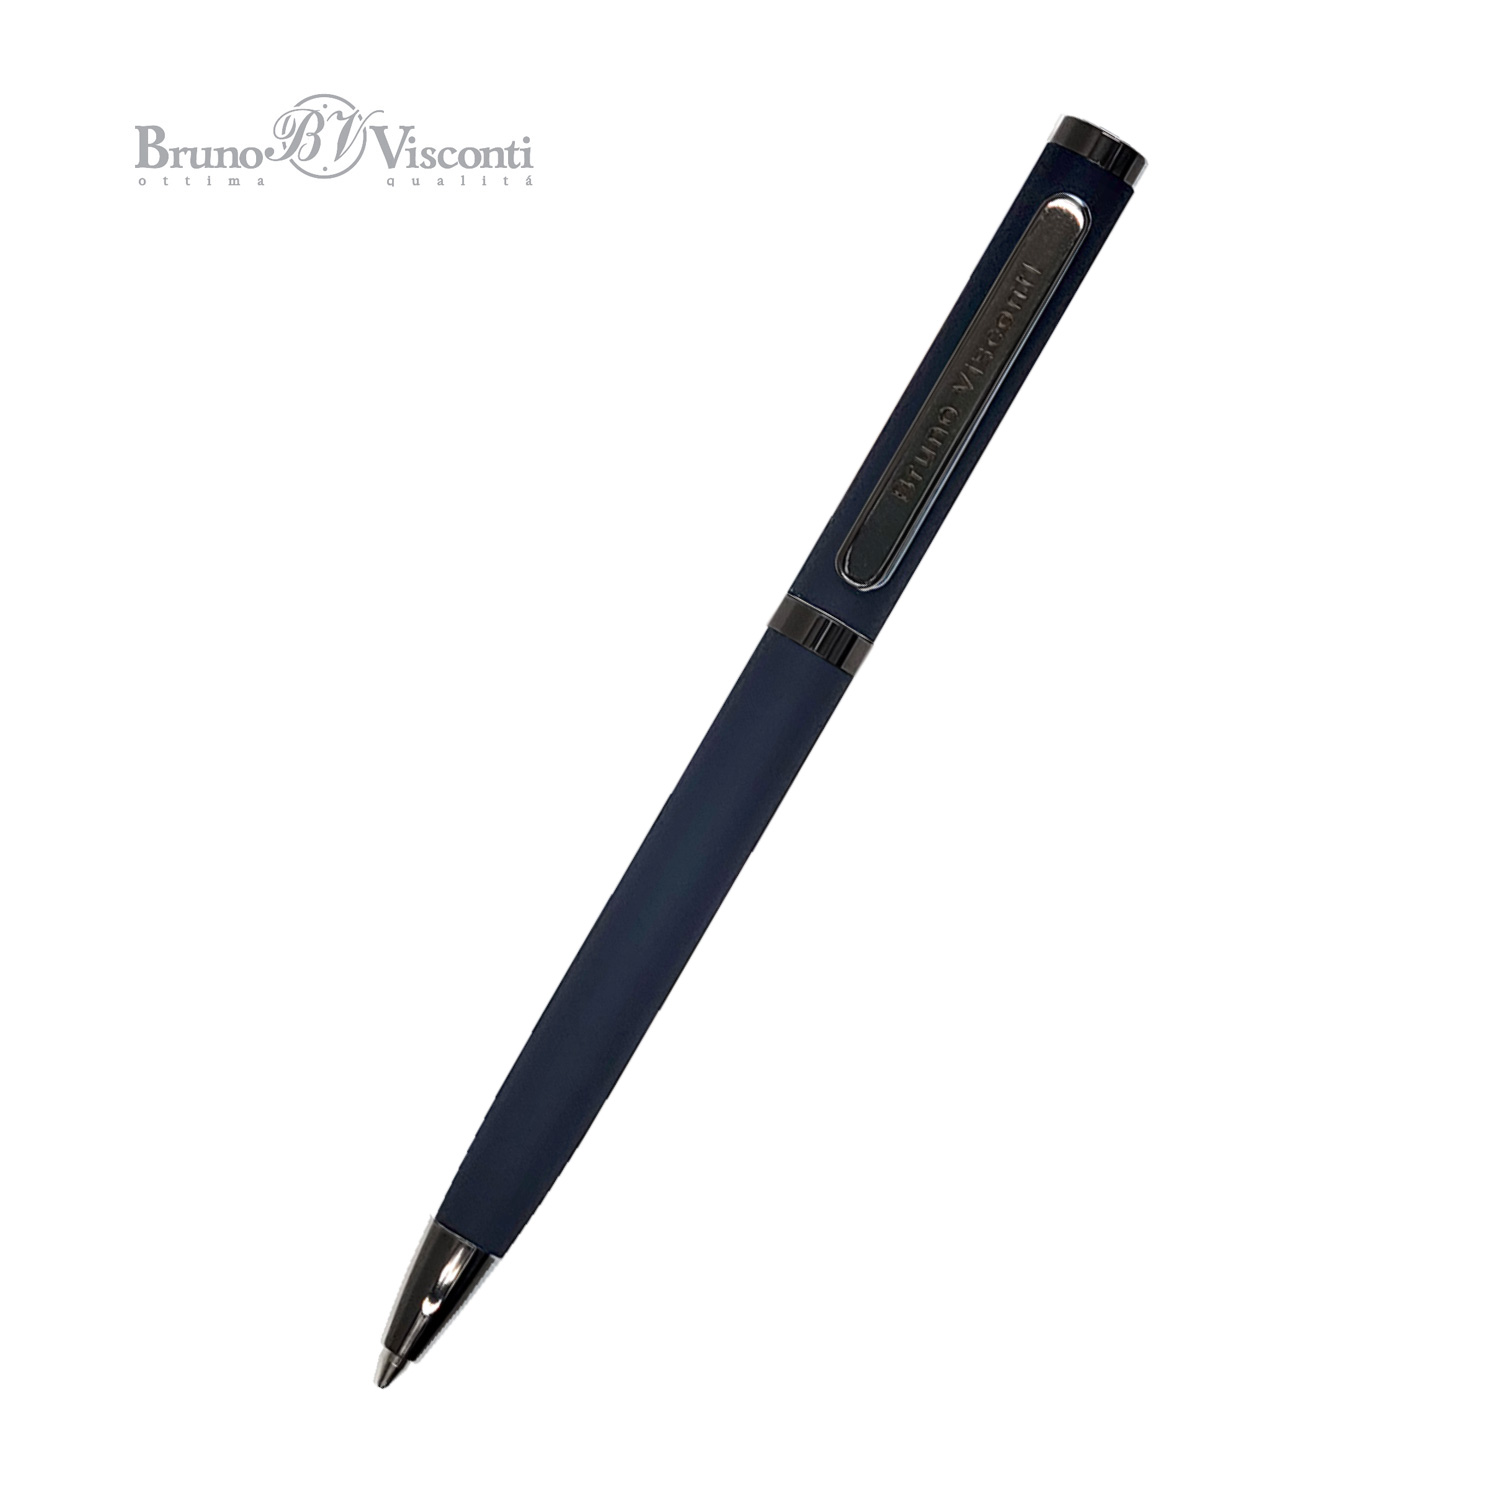 Ручка подар шар BV Firenze синяя 1мм авт синий мет корпус 1мм